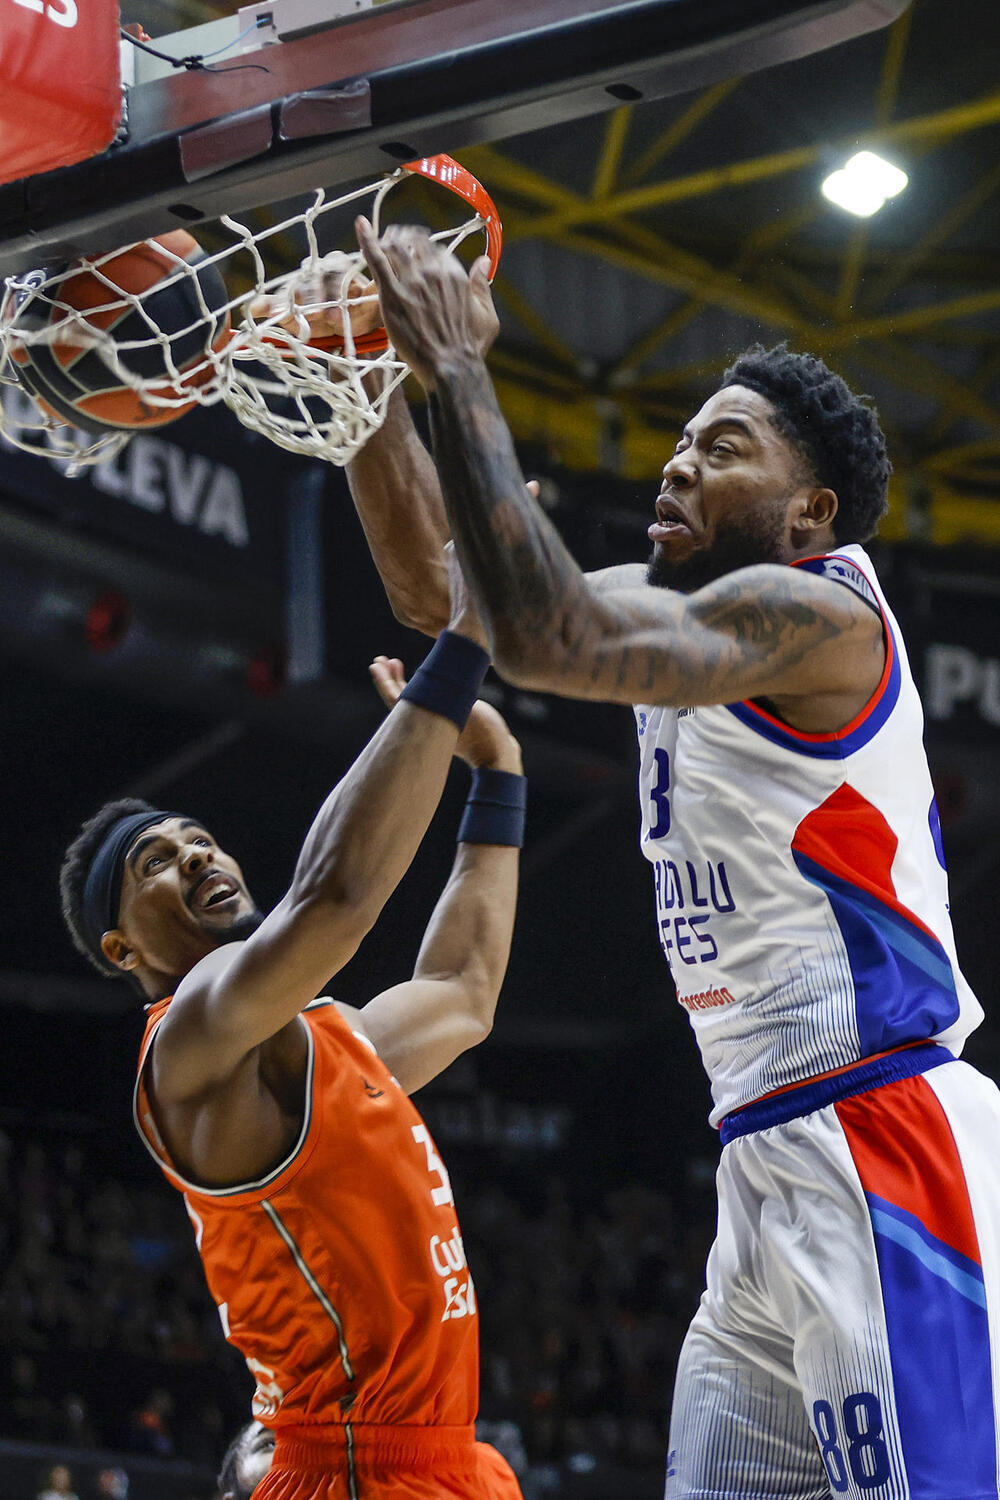 El Valencia Basket gana con coraje a un Anadolu Efes mermado
